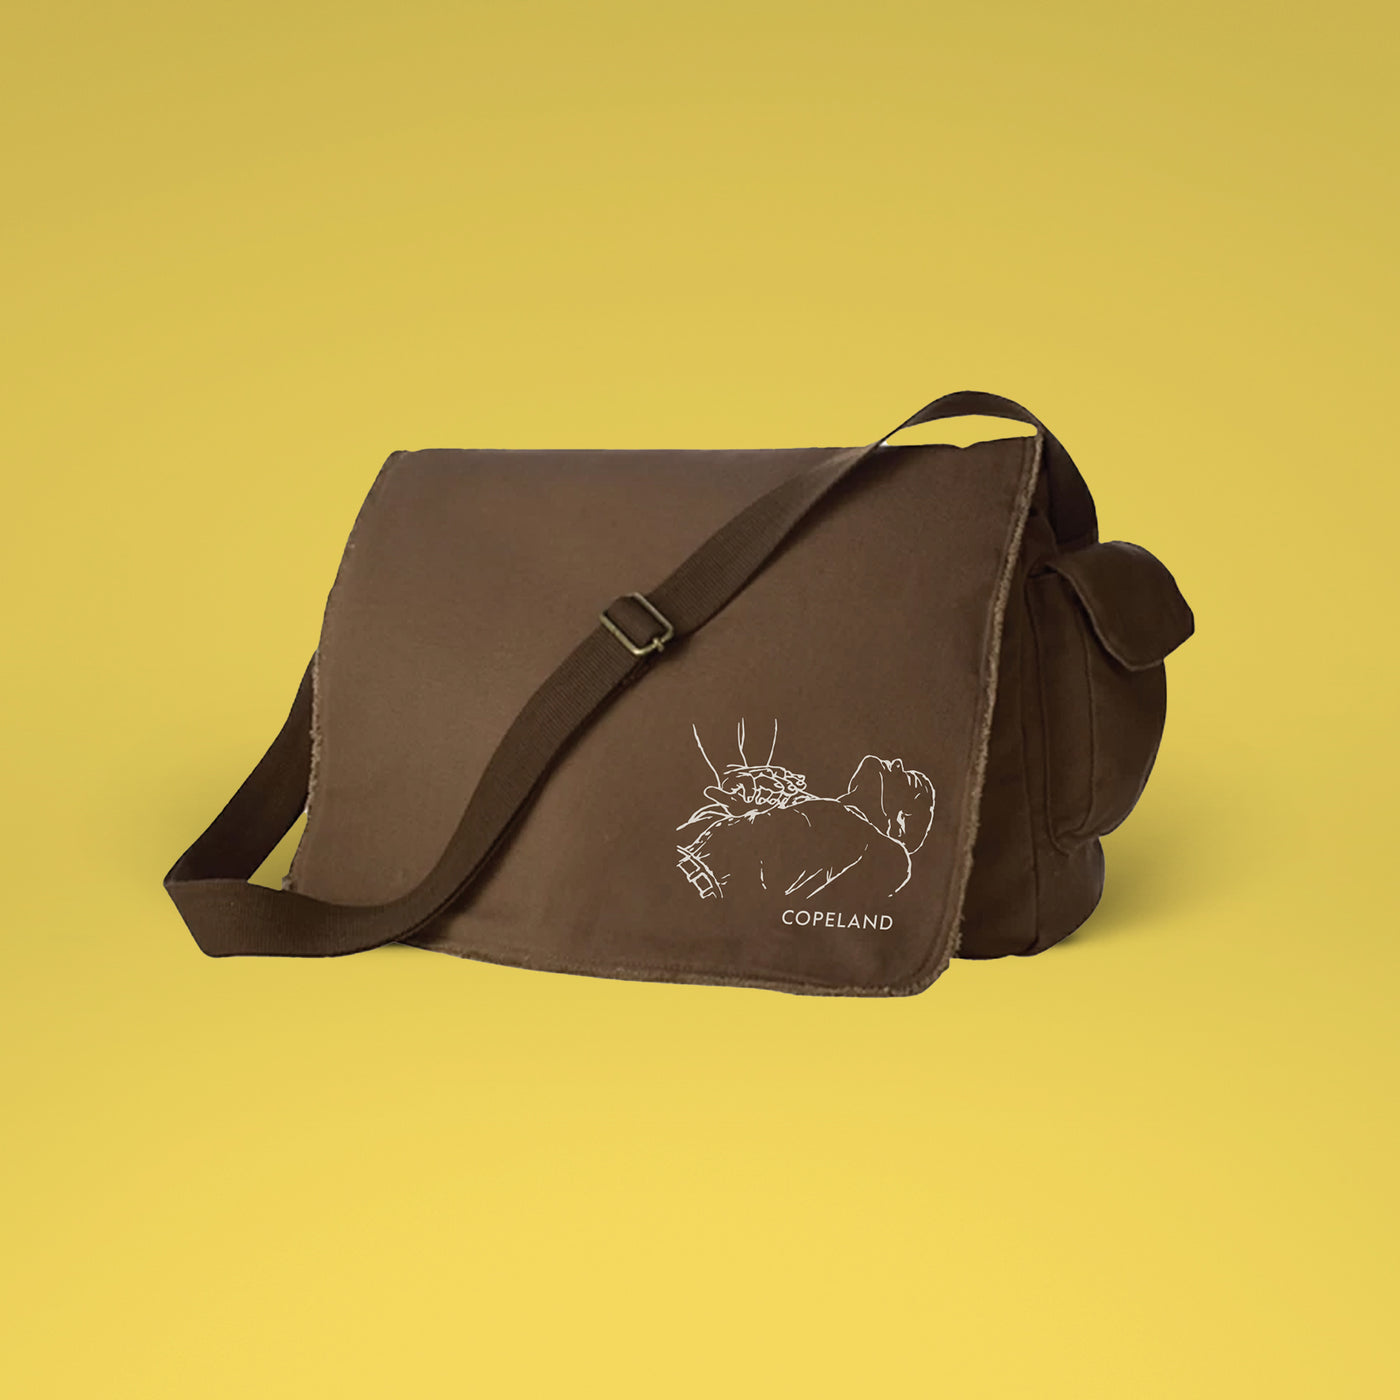 Copeland - Messenger Bag